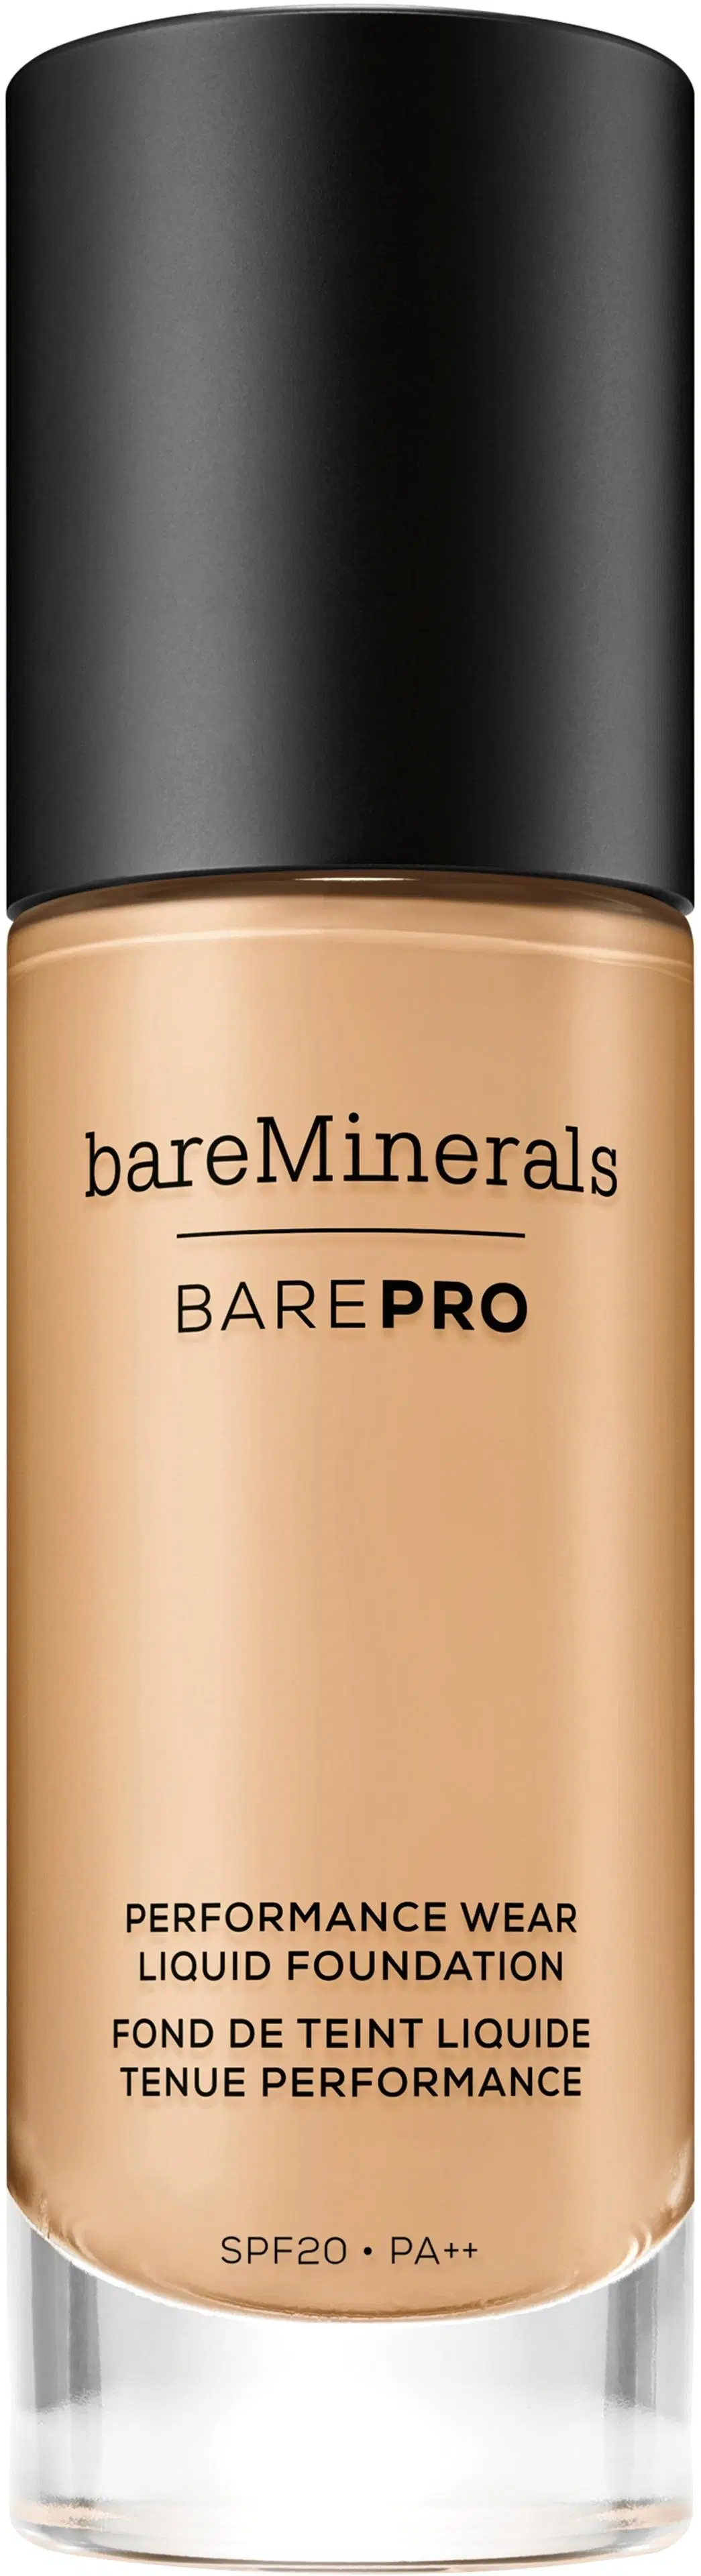 bareMinerals Bare Pro Performance Wear Liquid Foundation SPF 20 meikkivoide 30 ml